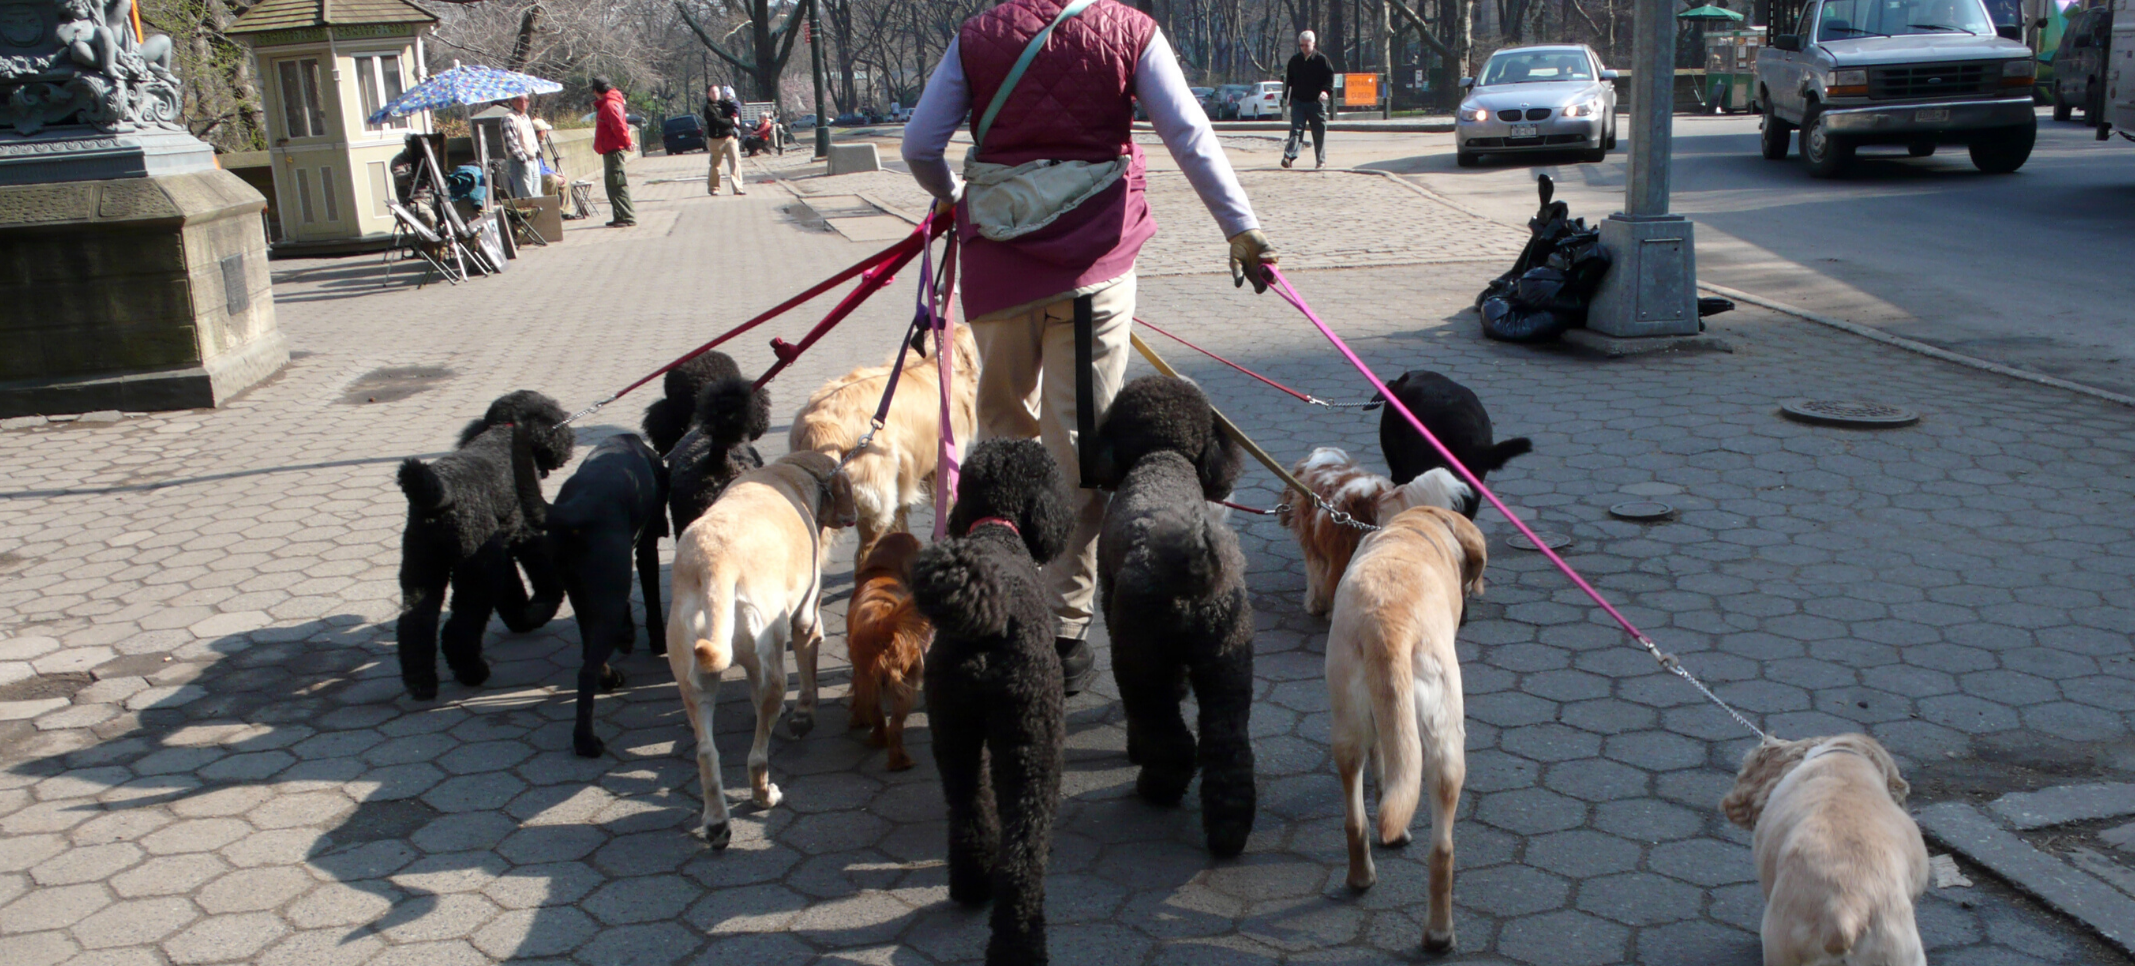 cobrar por pasear perros? Blog de TinkerLink